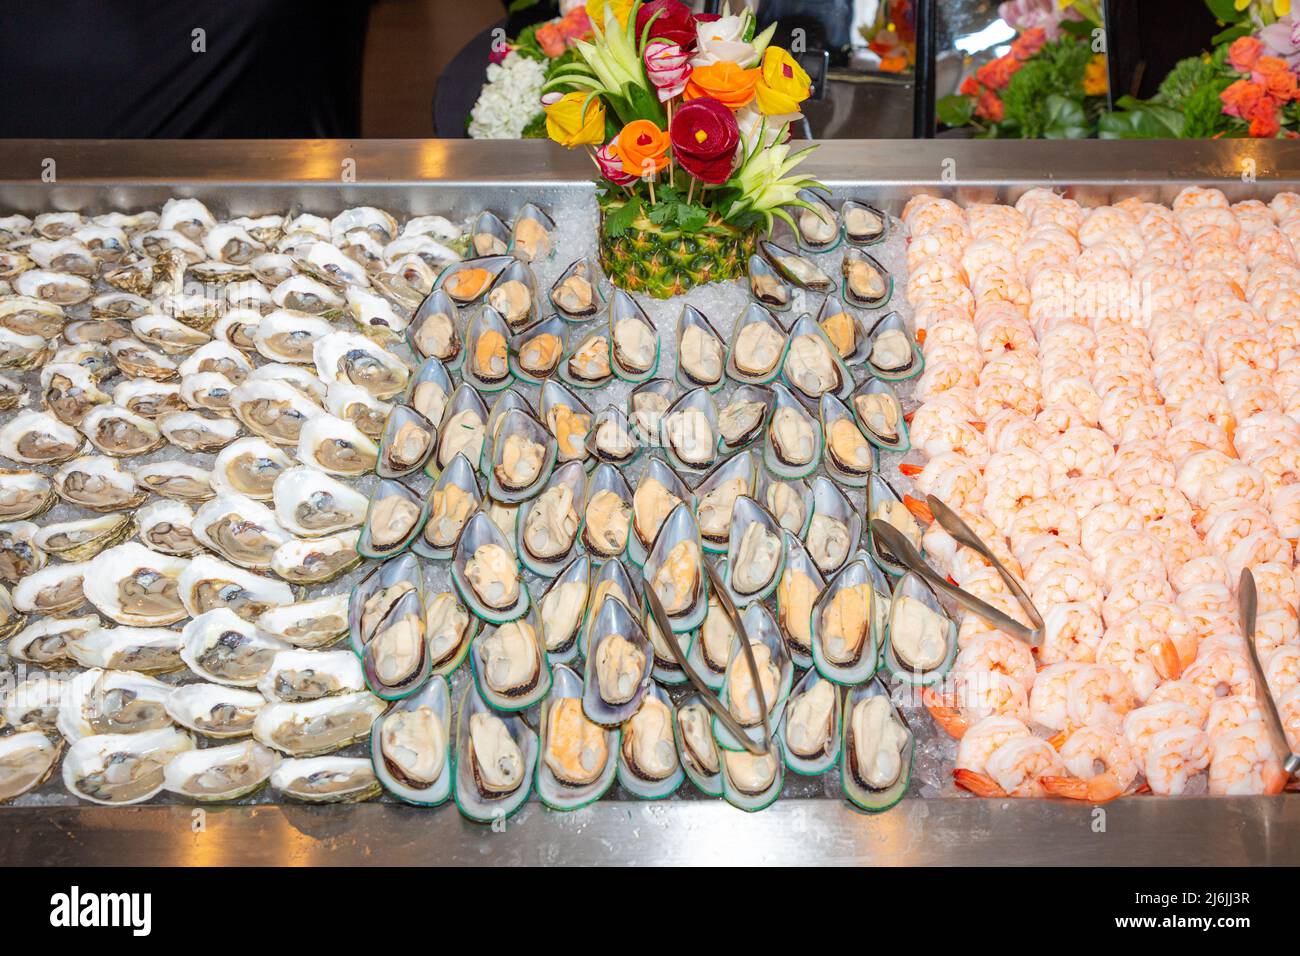 Austern auf einer Halbschale und Garnelen am Mittagsbuffet. Stockfoto